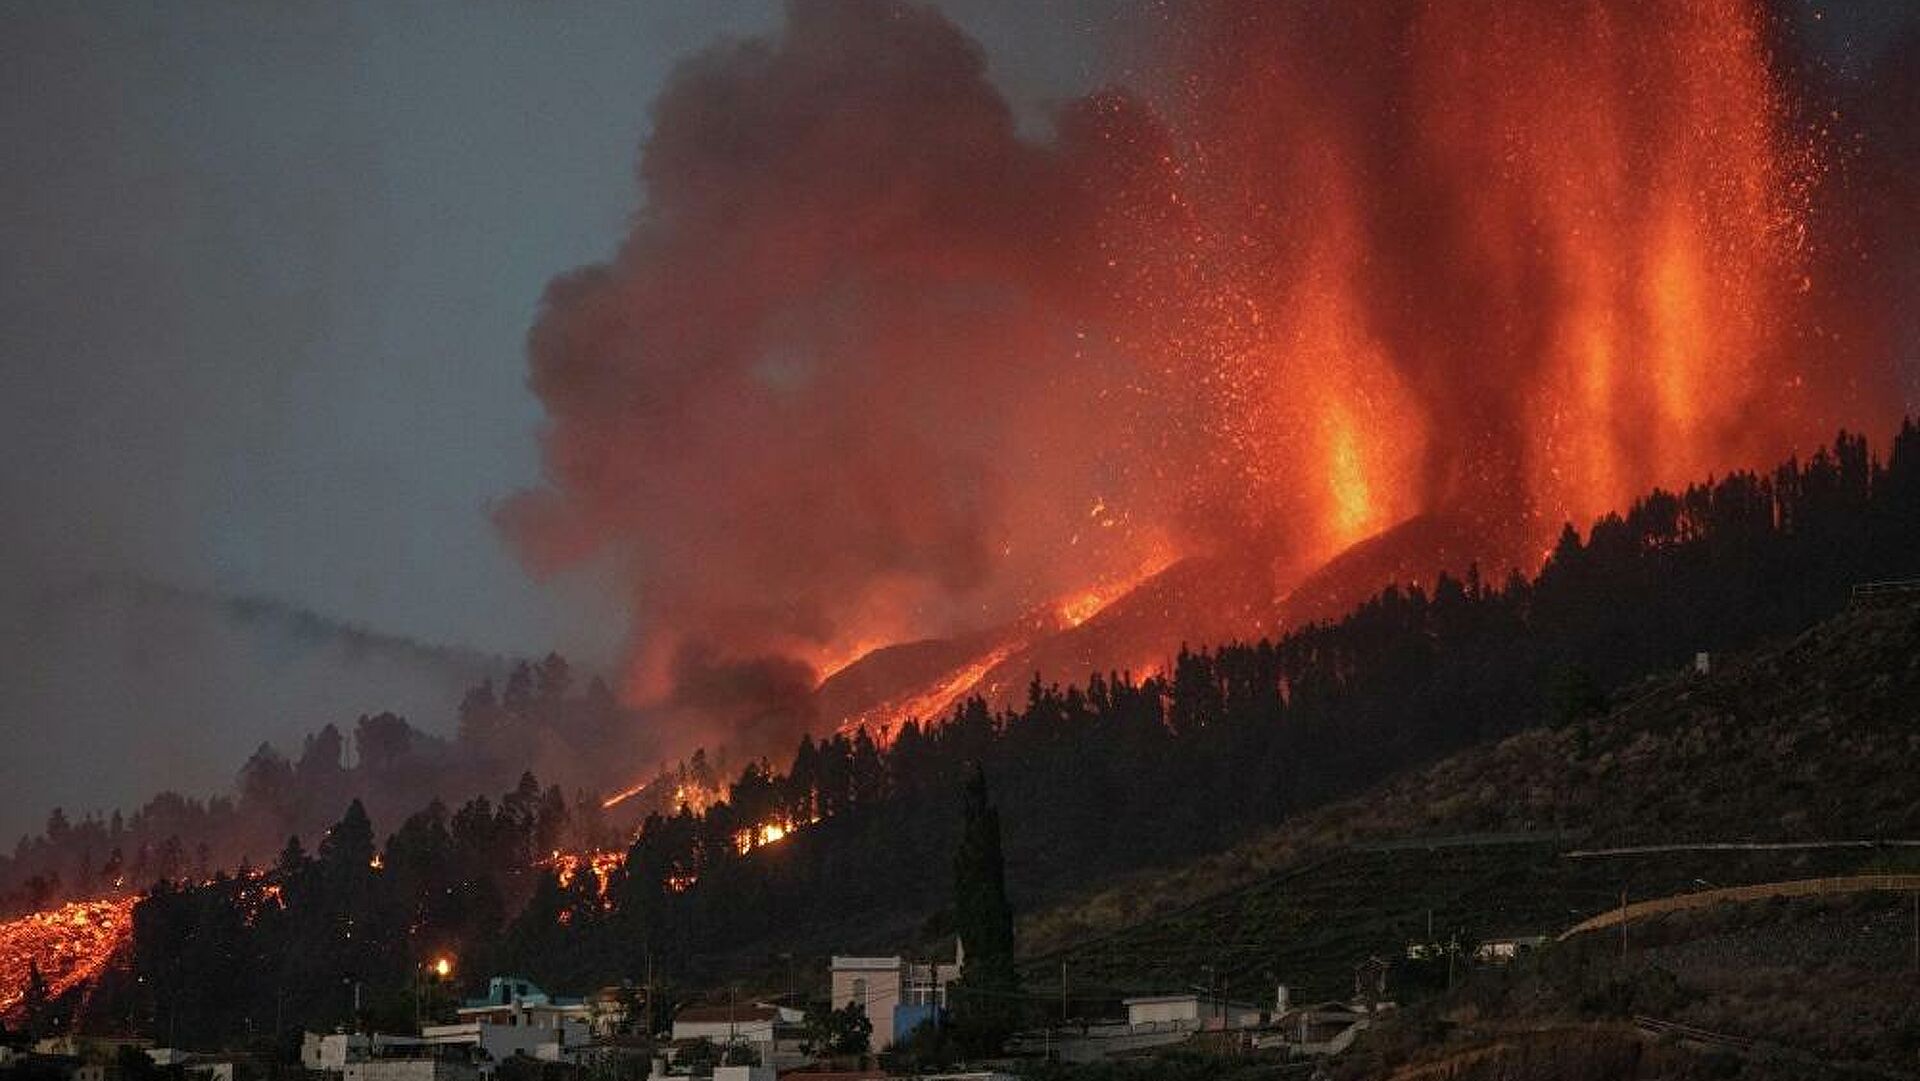 kanarya adalarinda yanardag patlamasi sonucu binlerce insan tahliye edildi 01